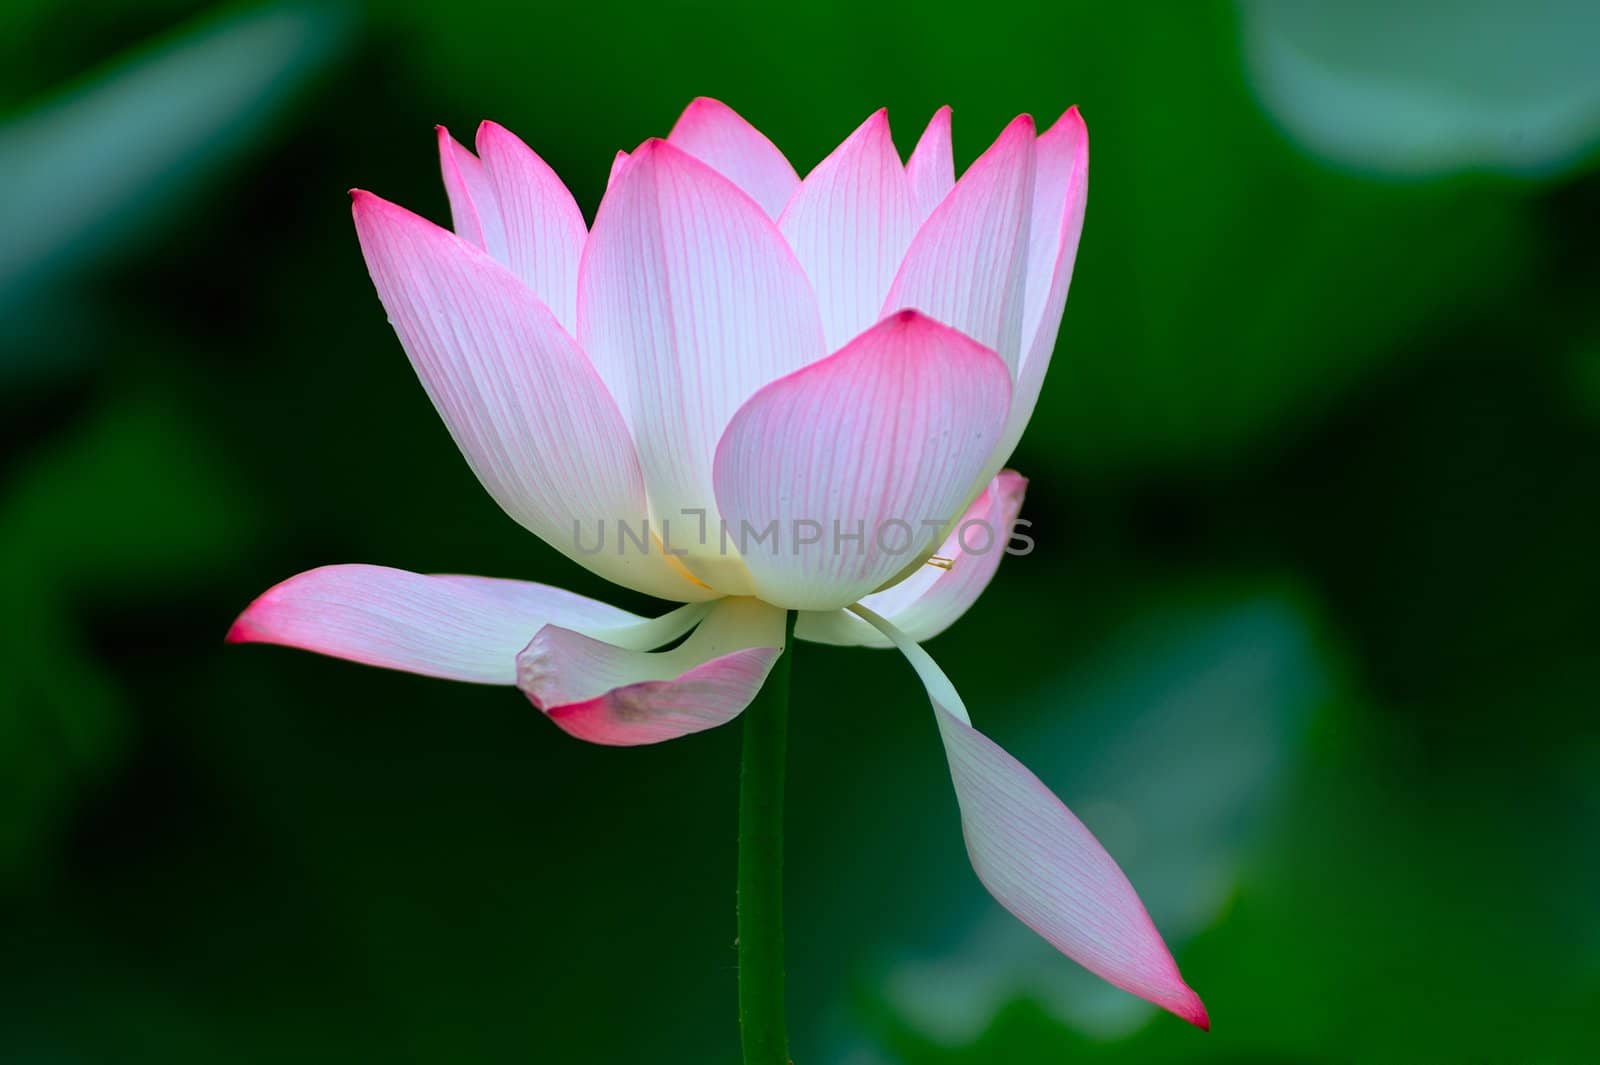 Lotus flower blooming in the pool